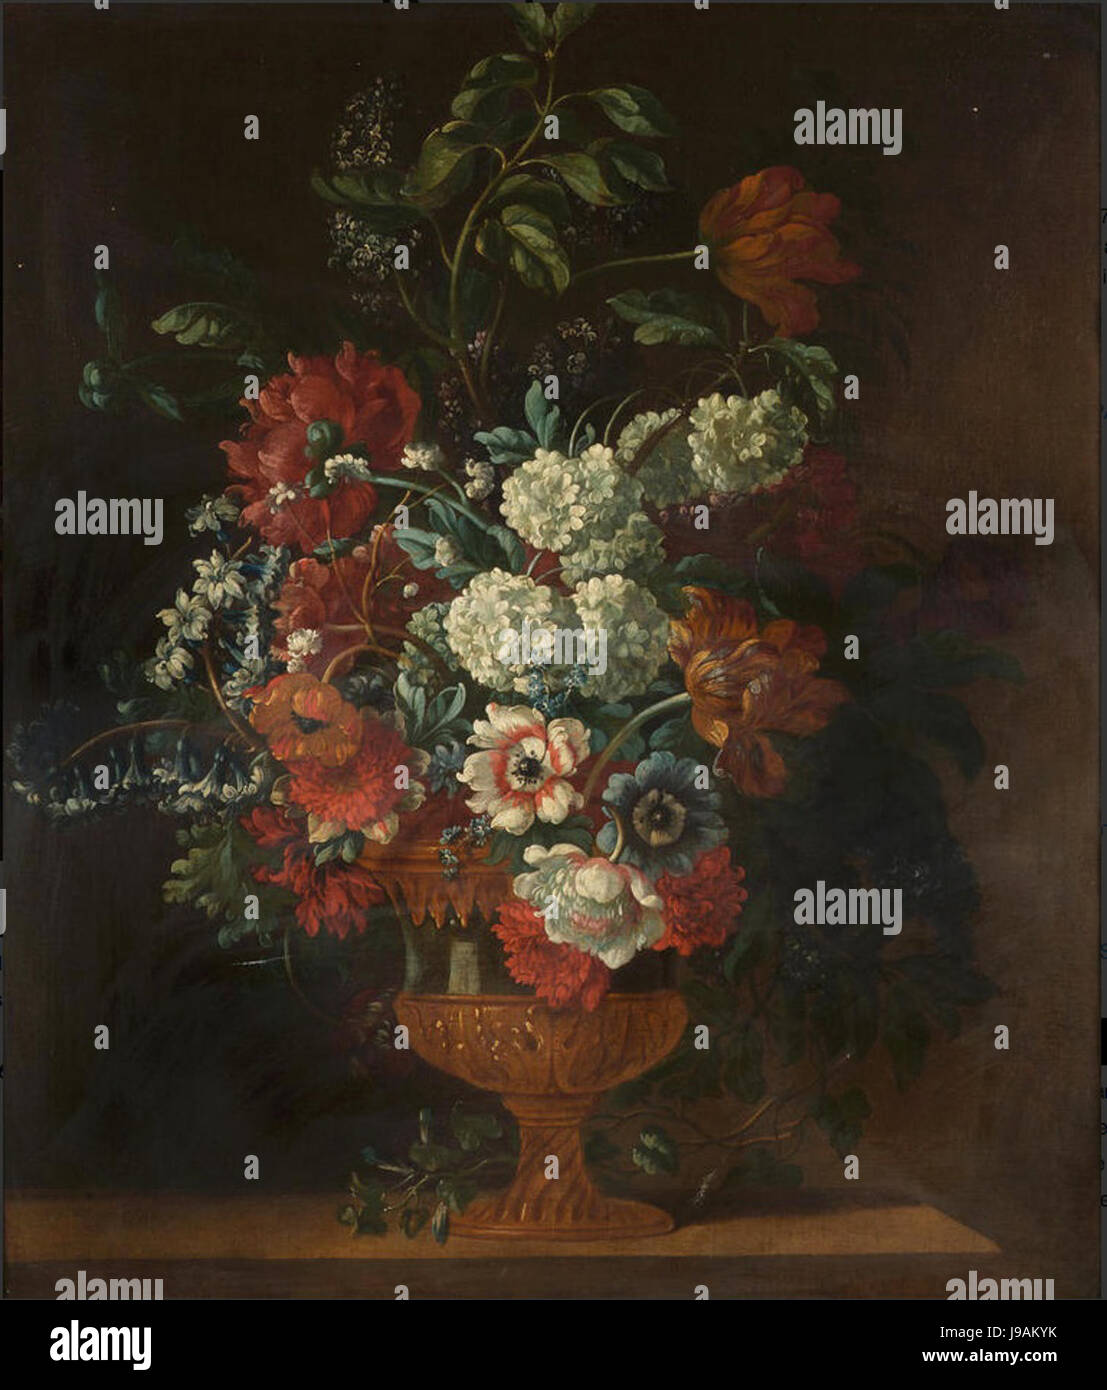 Pieter hierzu III Tulpen, Mohn, Rittersporn, Flieder und andere Blumen in einem vergoldeten Messingbeschläge Vase auf einem hölzernen Felsvorsprung montiert Stockfoto